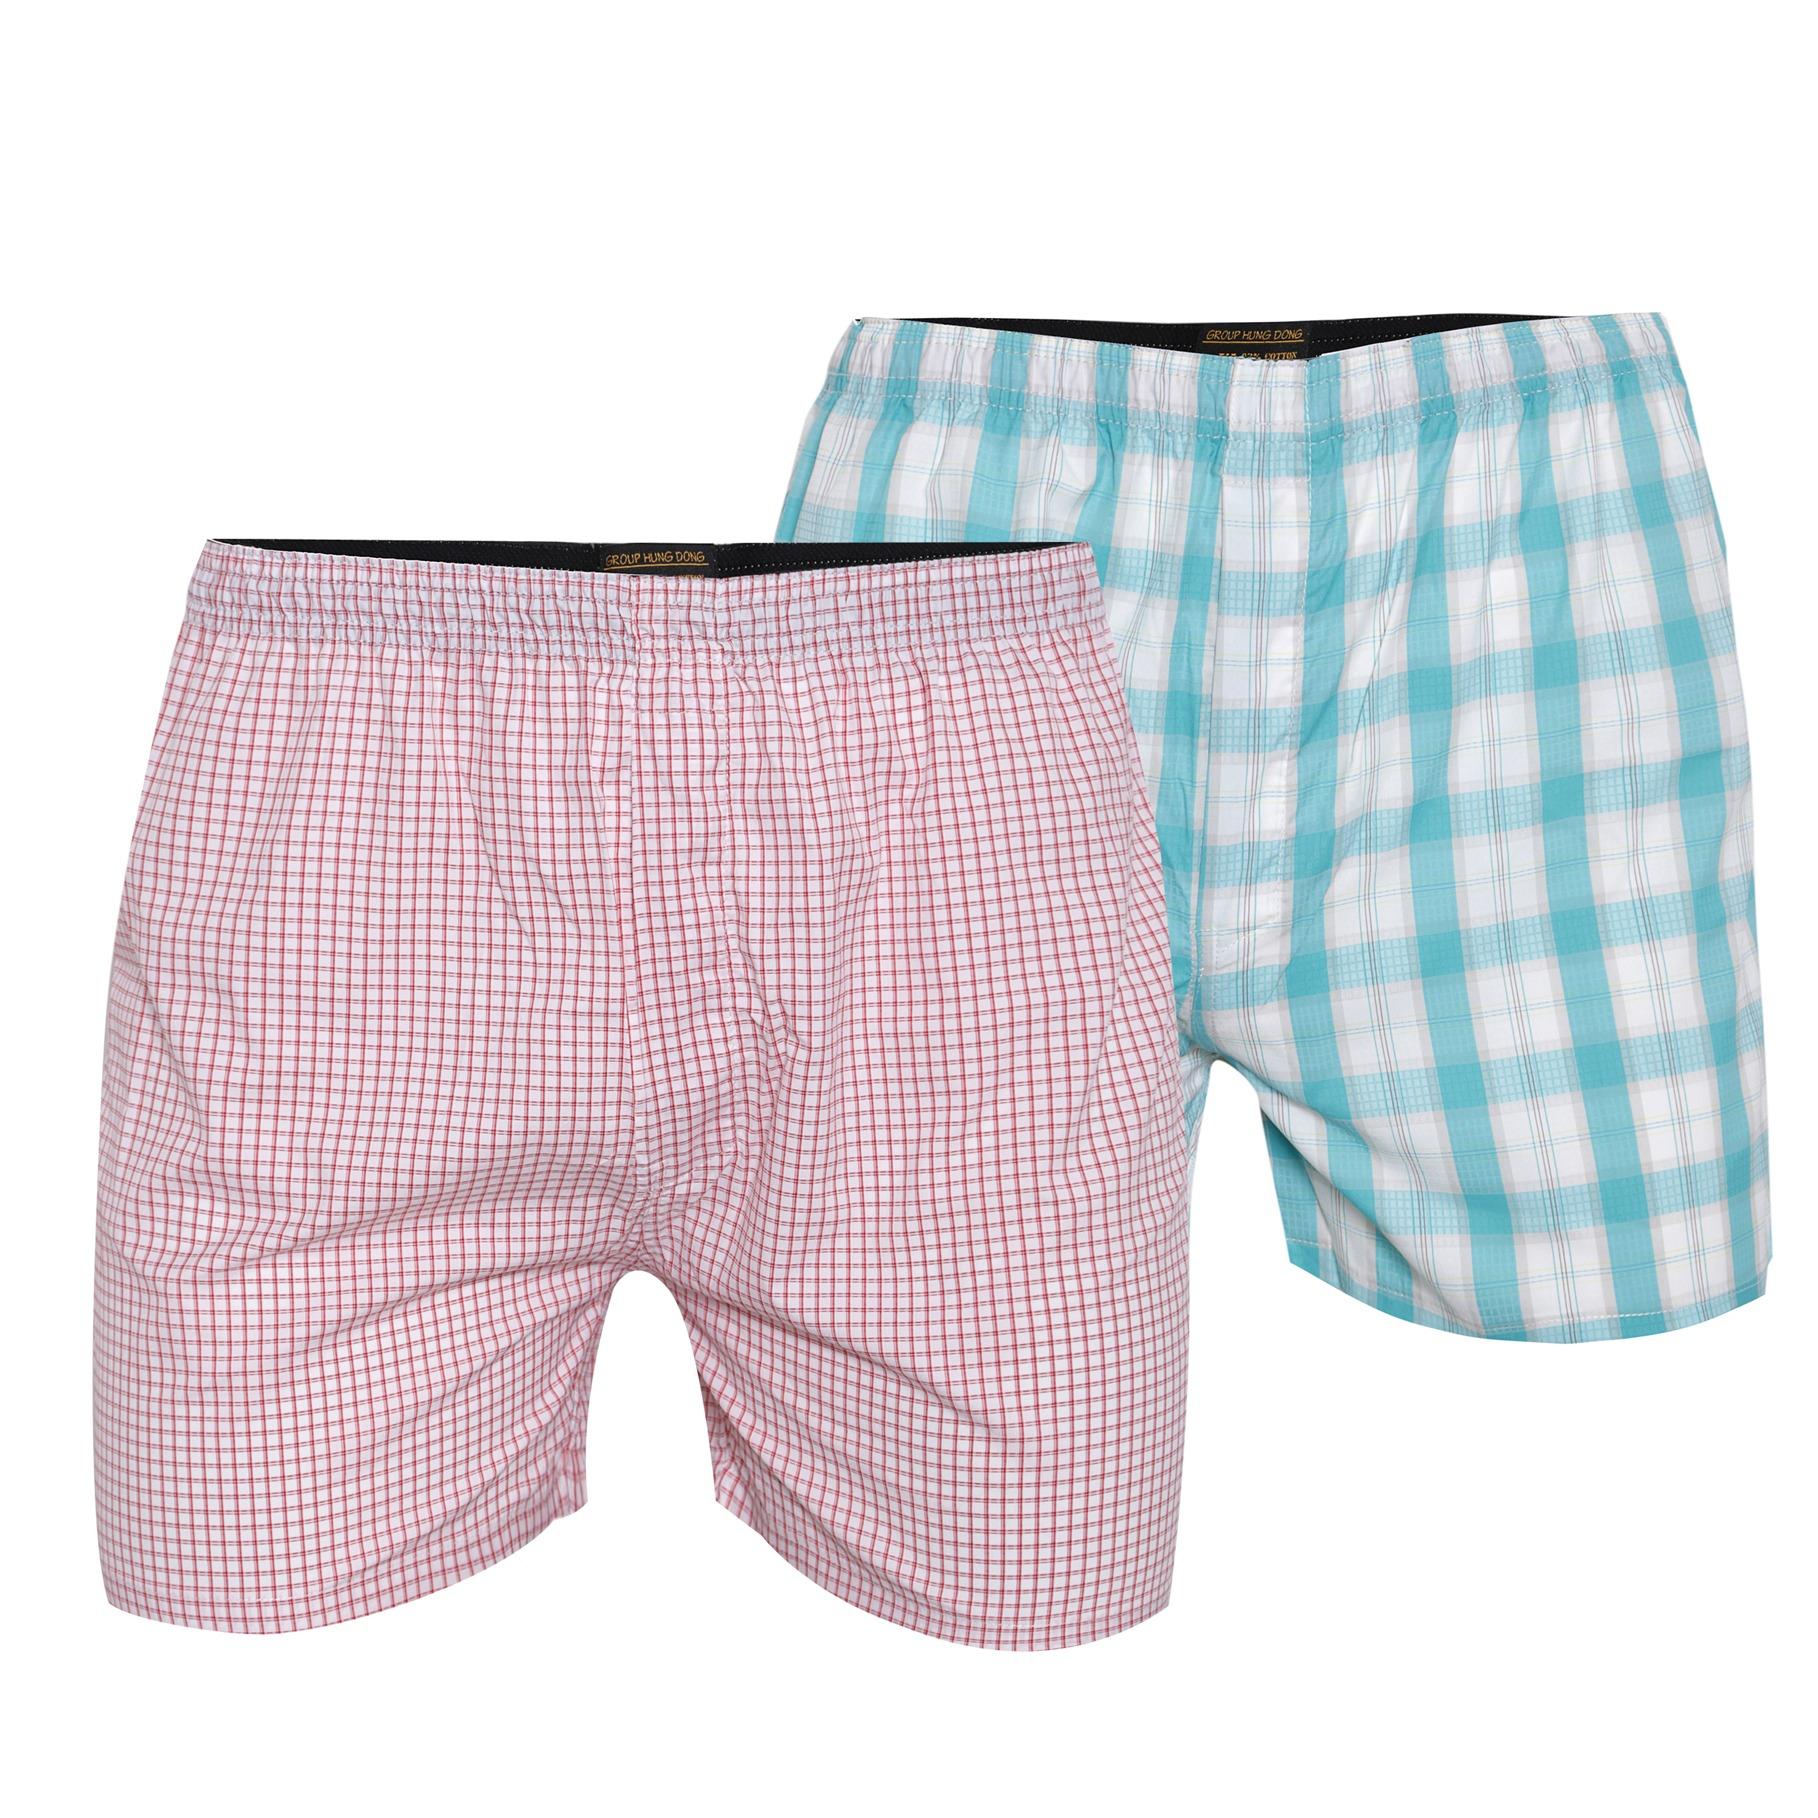 Combo 2 quần đùi mặc nhà cvring qd023 (hồng, xanh)